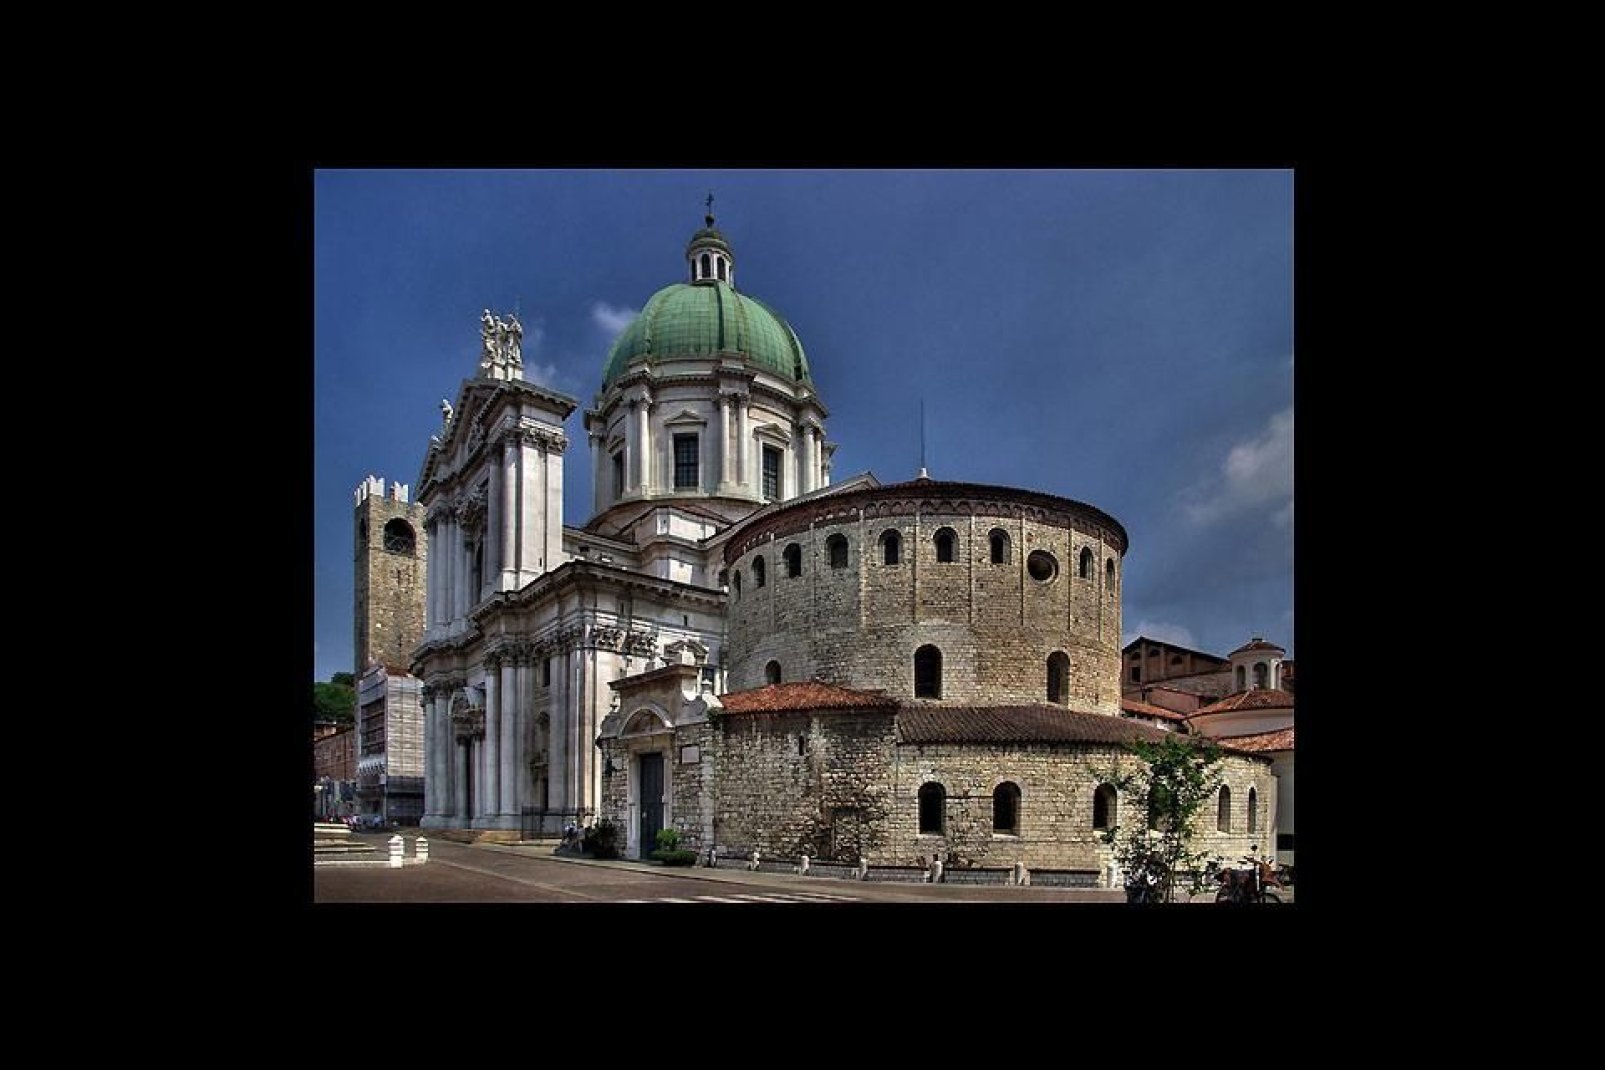 La catedral vieja es la concatedral de Brescia. Su construcción se inició en el siglo XI, sobre una antigua basílica cuya estructura románica original se ha conservado intacta.